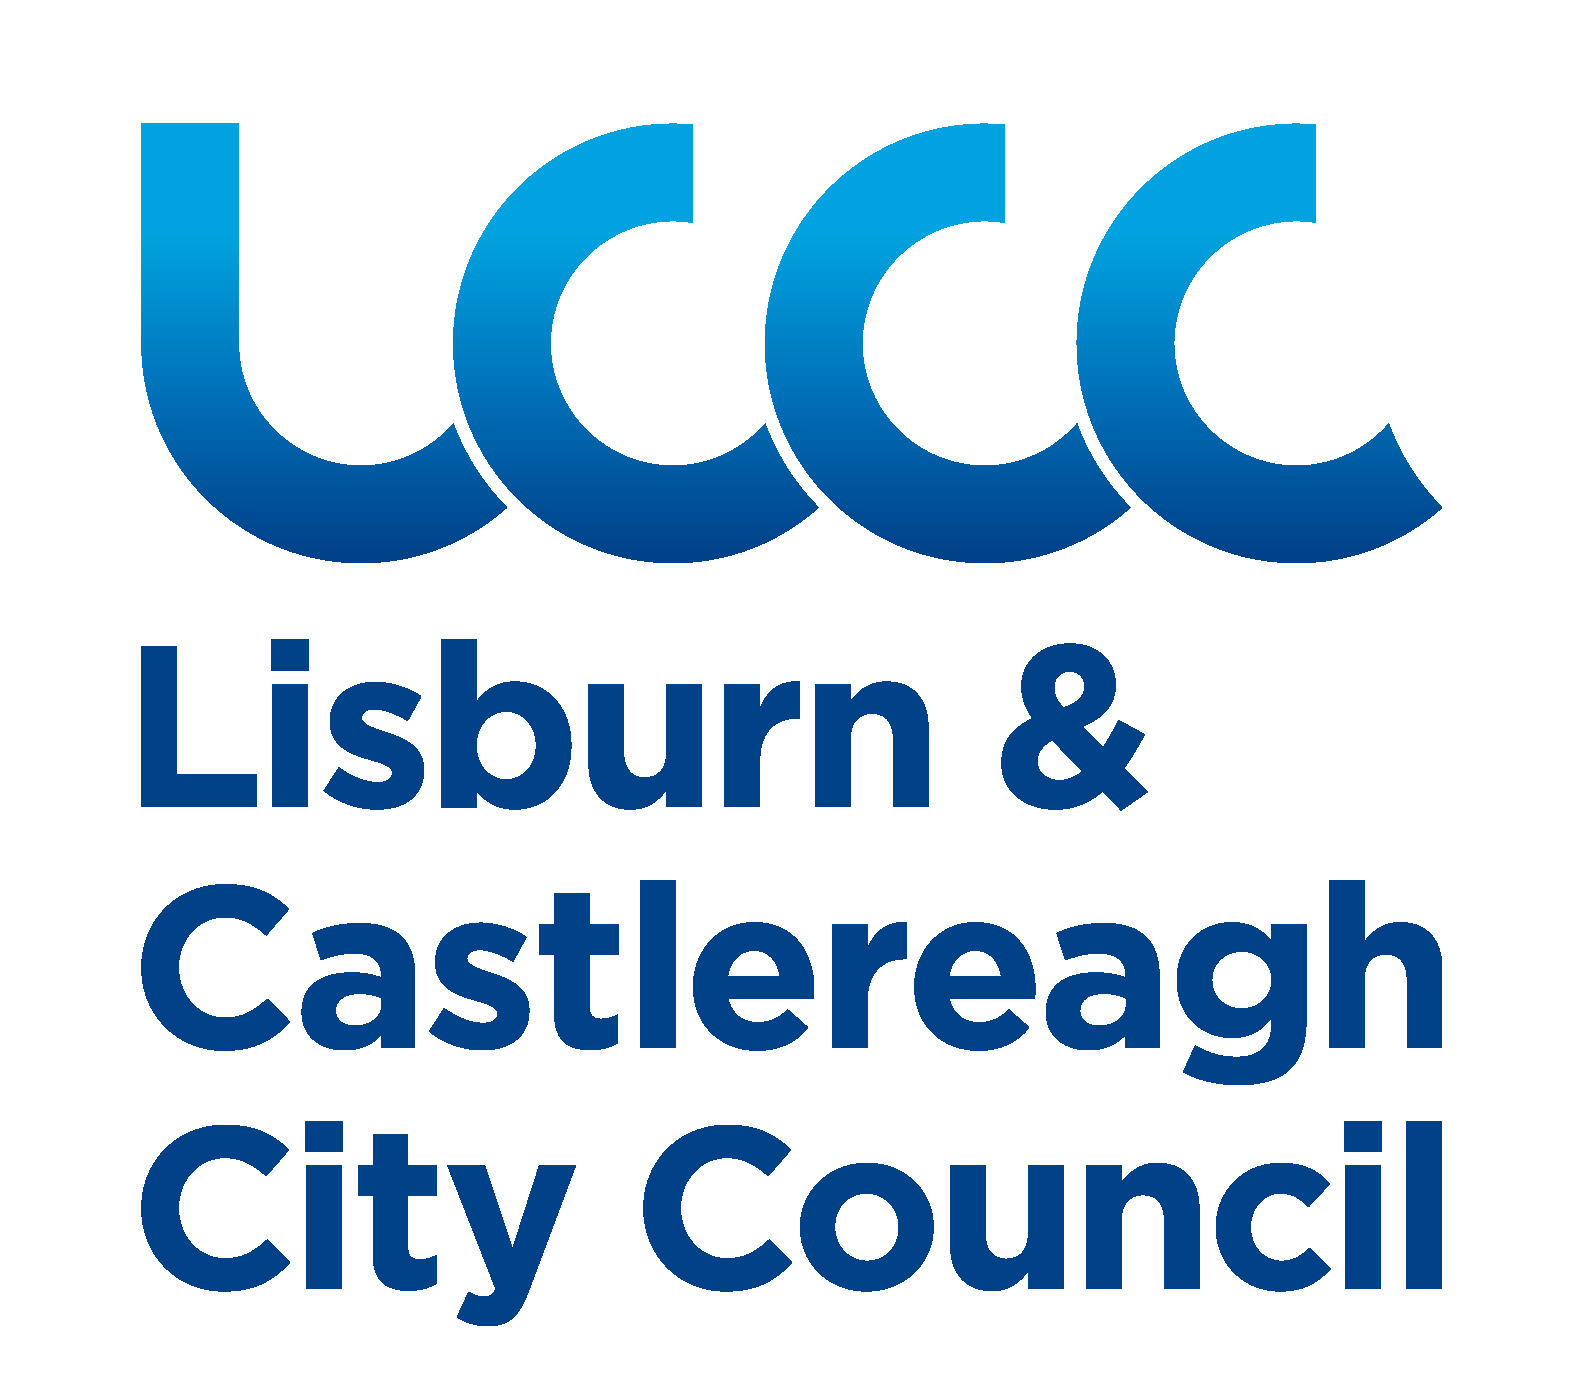 lisburn-castlereagh-city-council